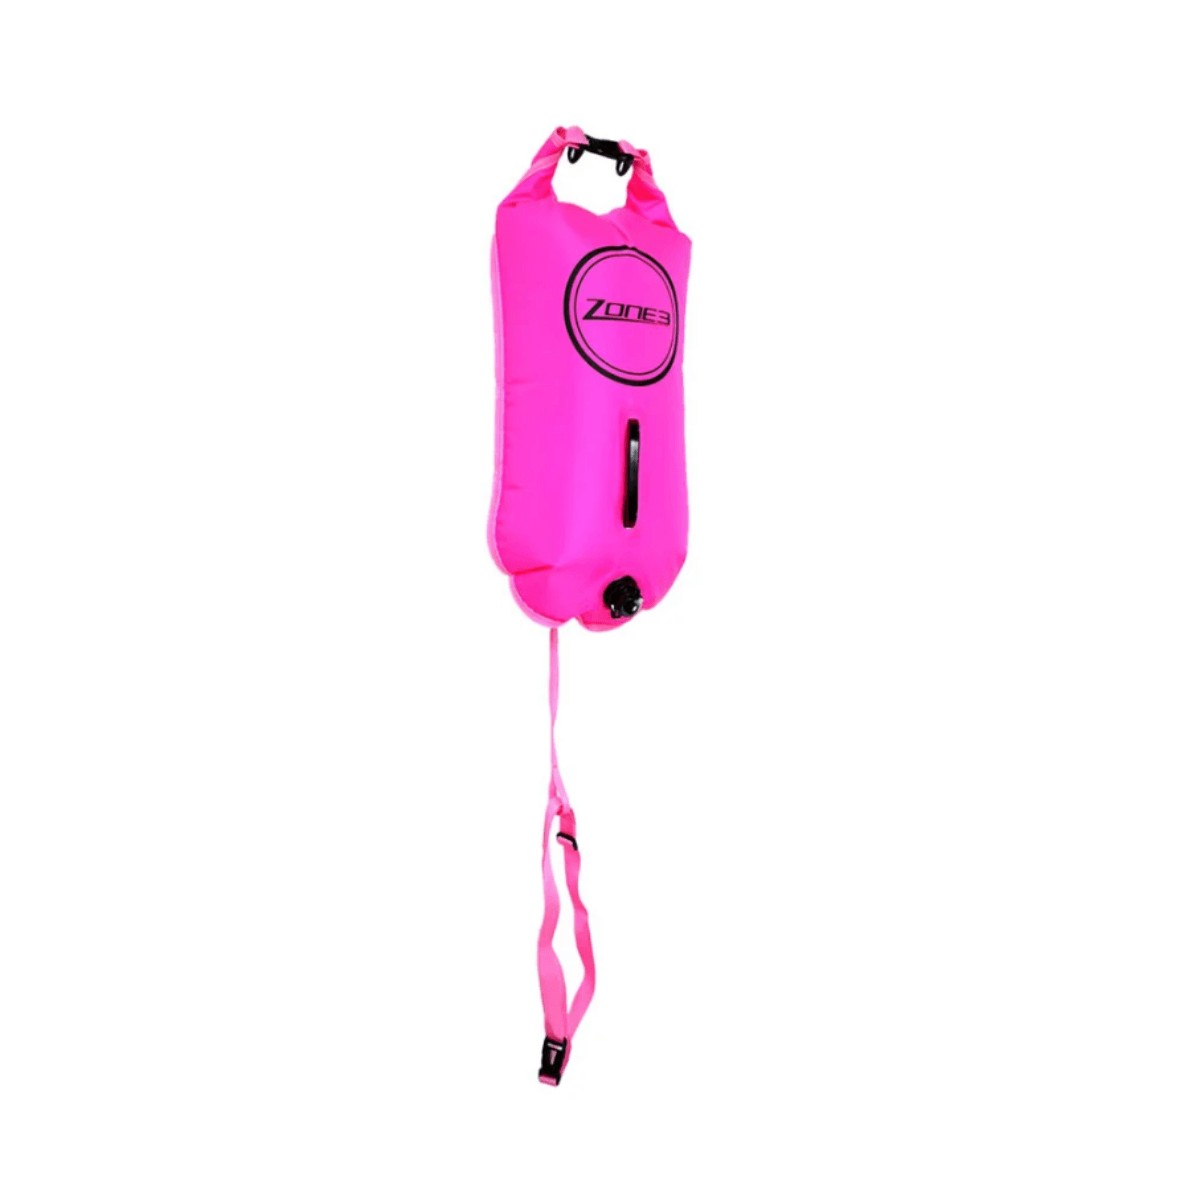 beim günstig Kaufen-Zone3 Schwimmen Boje Neon Dry Bag Rosa. Zone3 Schwimmen Boje Neon Dry Bag Rosa <![CDATA[Hauptmerkmale Boje Zone3 Schwimmen Neon Dry Bag Pink Diese farbenfrohe aufblasbare Boje ist ideal, um Ihre Ausrüstung beim Schwimmen aufzubewahren und beim Schwimmen 